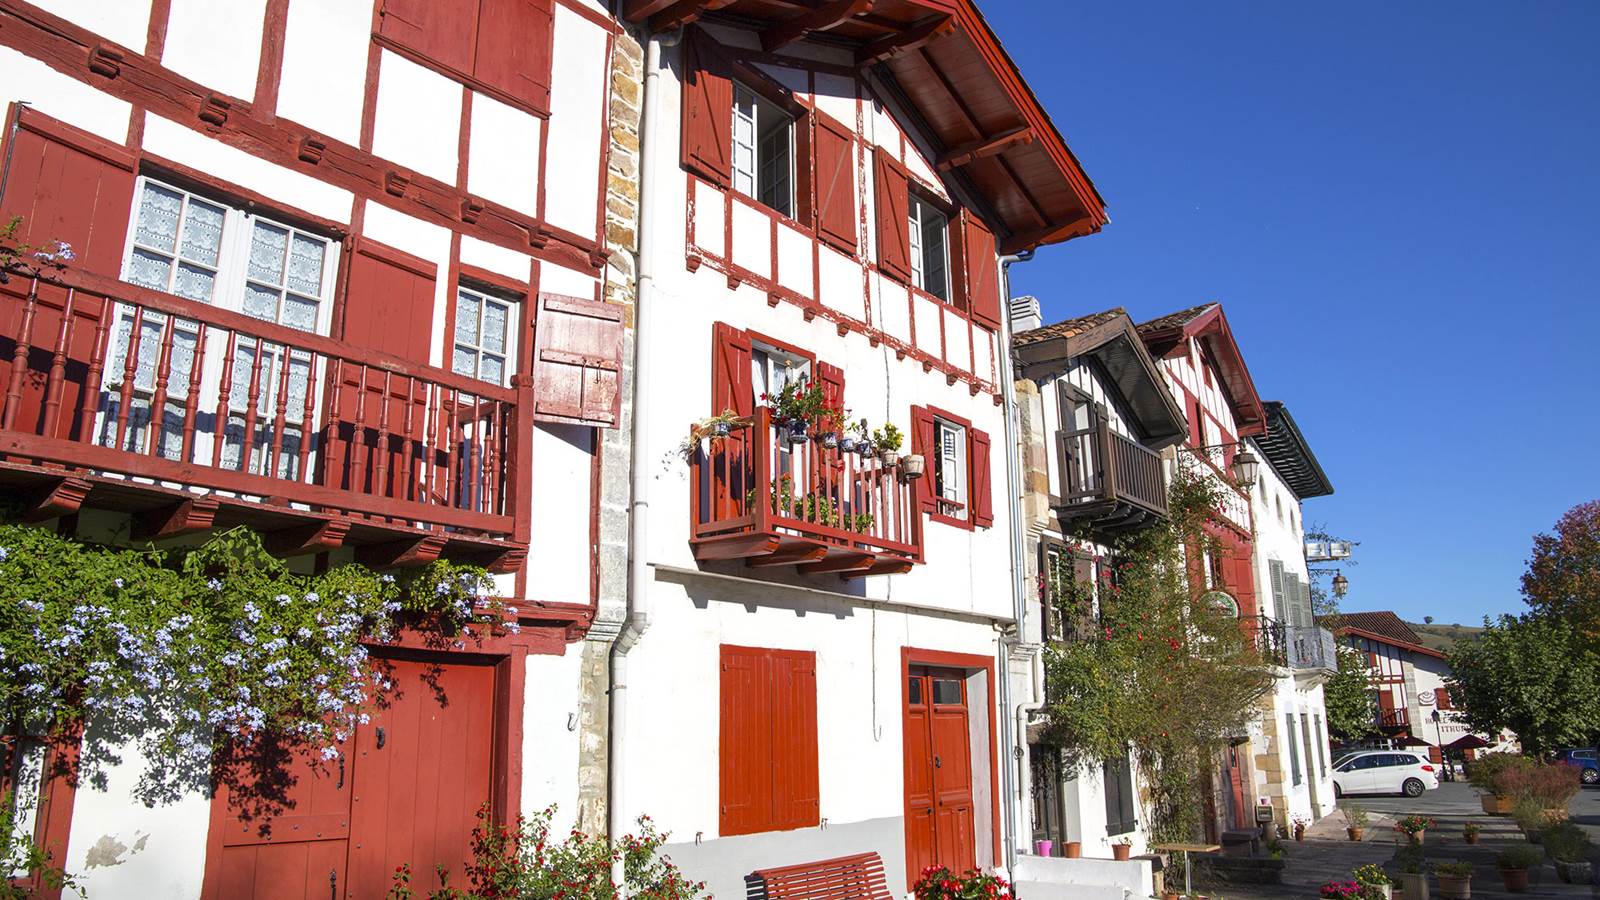 Ainhoa, l'un des plus beaux villages du Pays basque